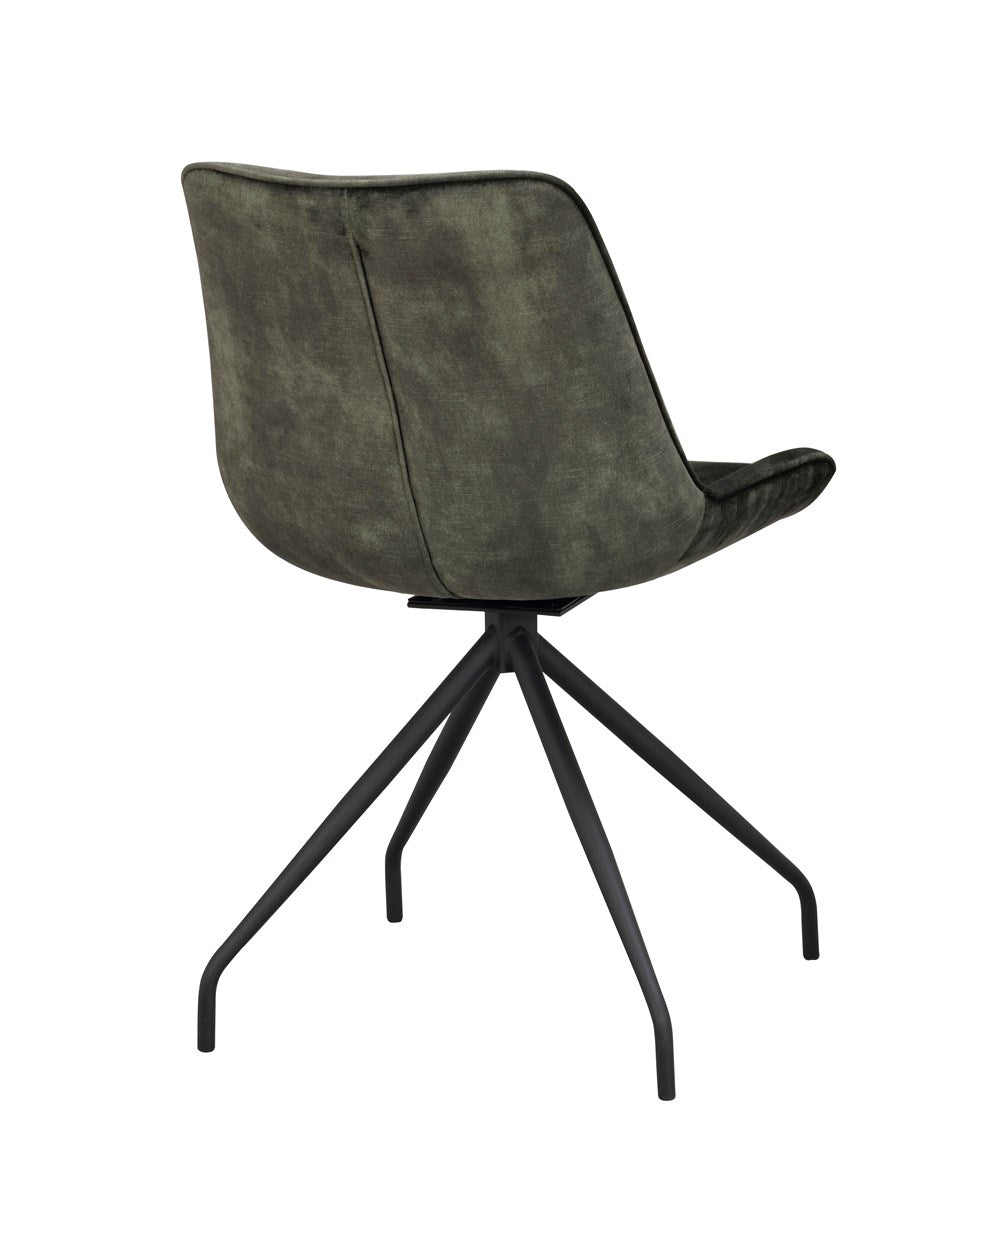 120081_d-rossport-chair-green-velvet_black